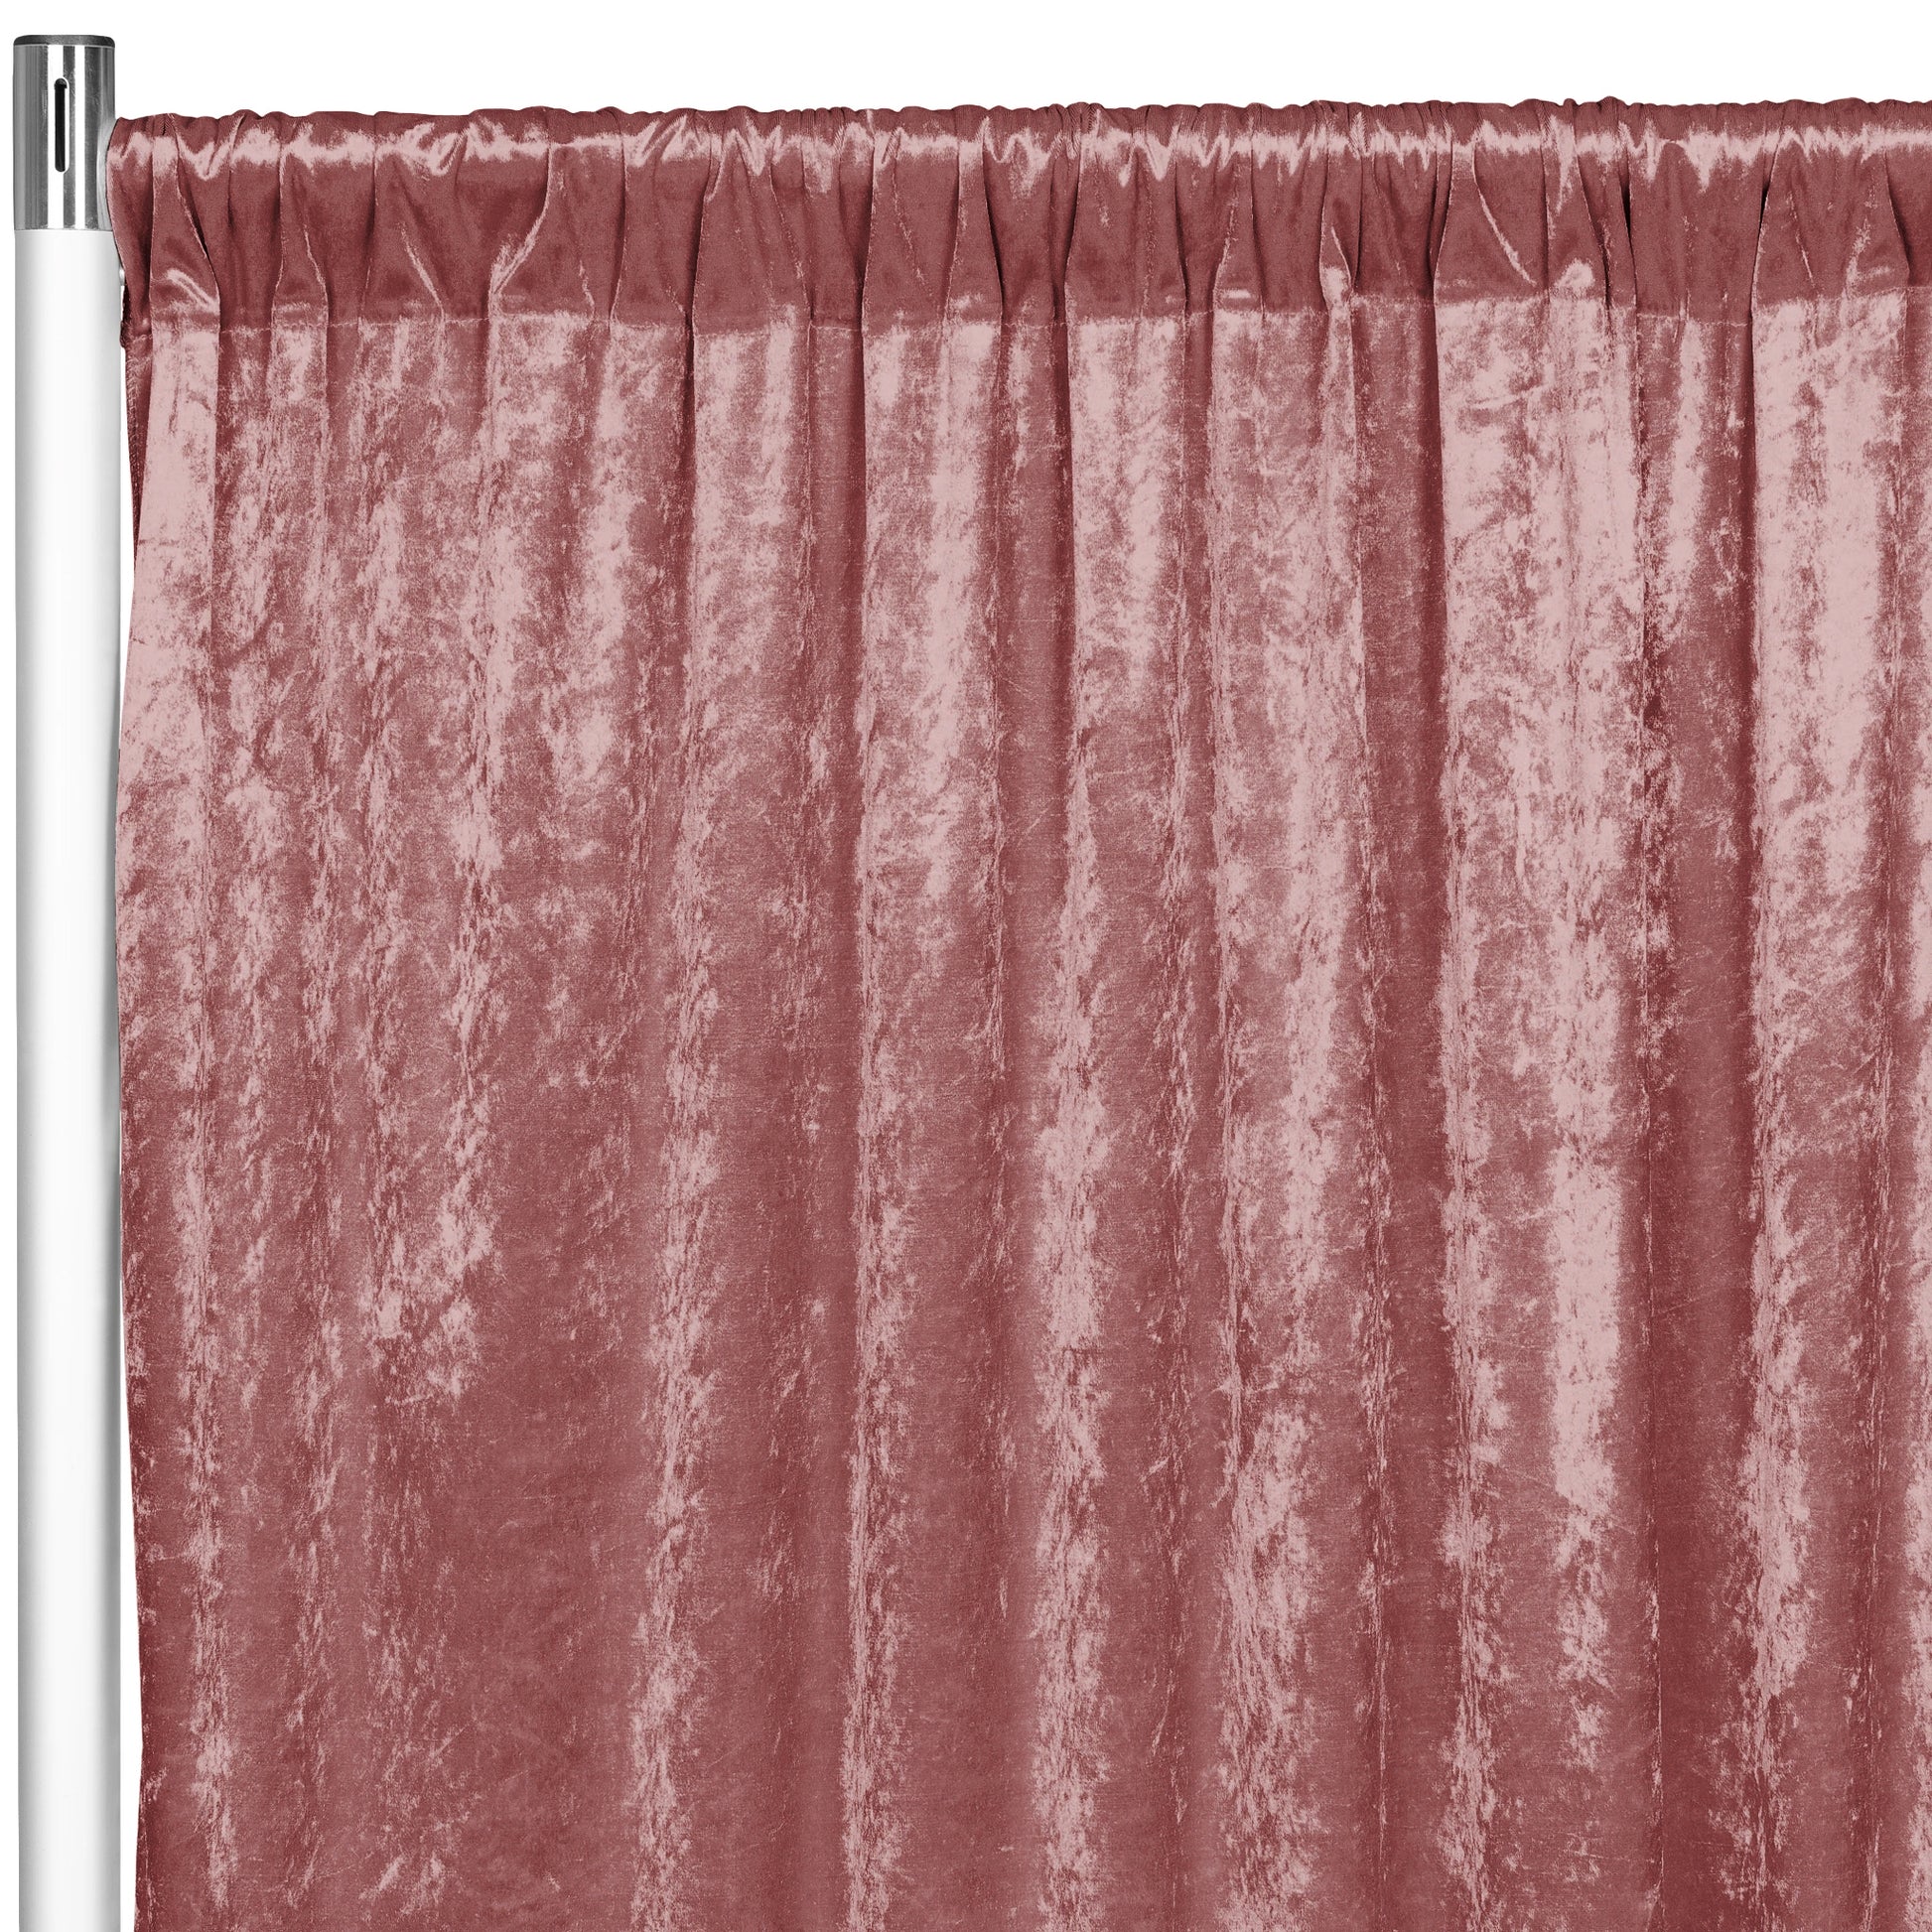 Velvet 12ft H x 52" W Drape/Backdrop Curtain Panel - Dark Dusty Rose